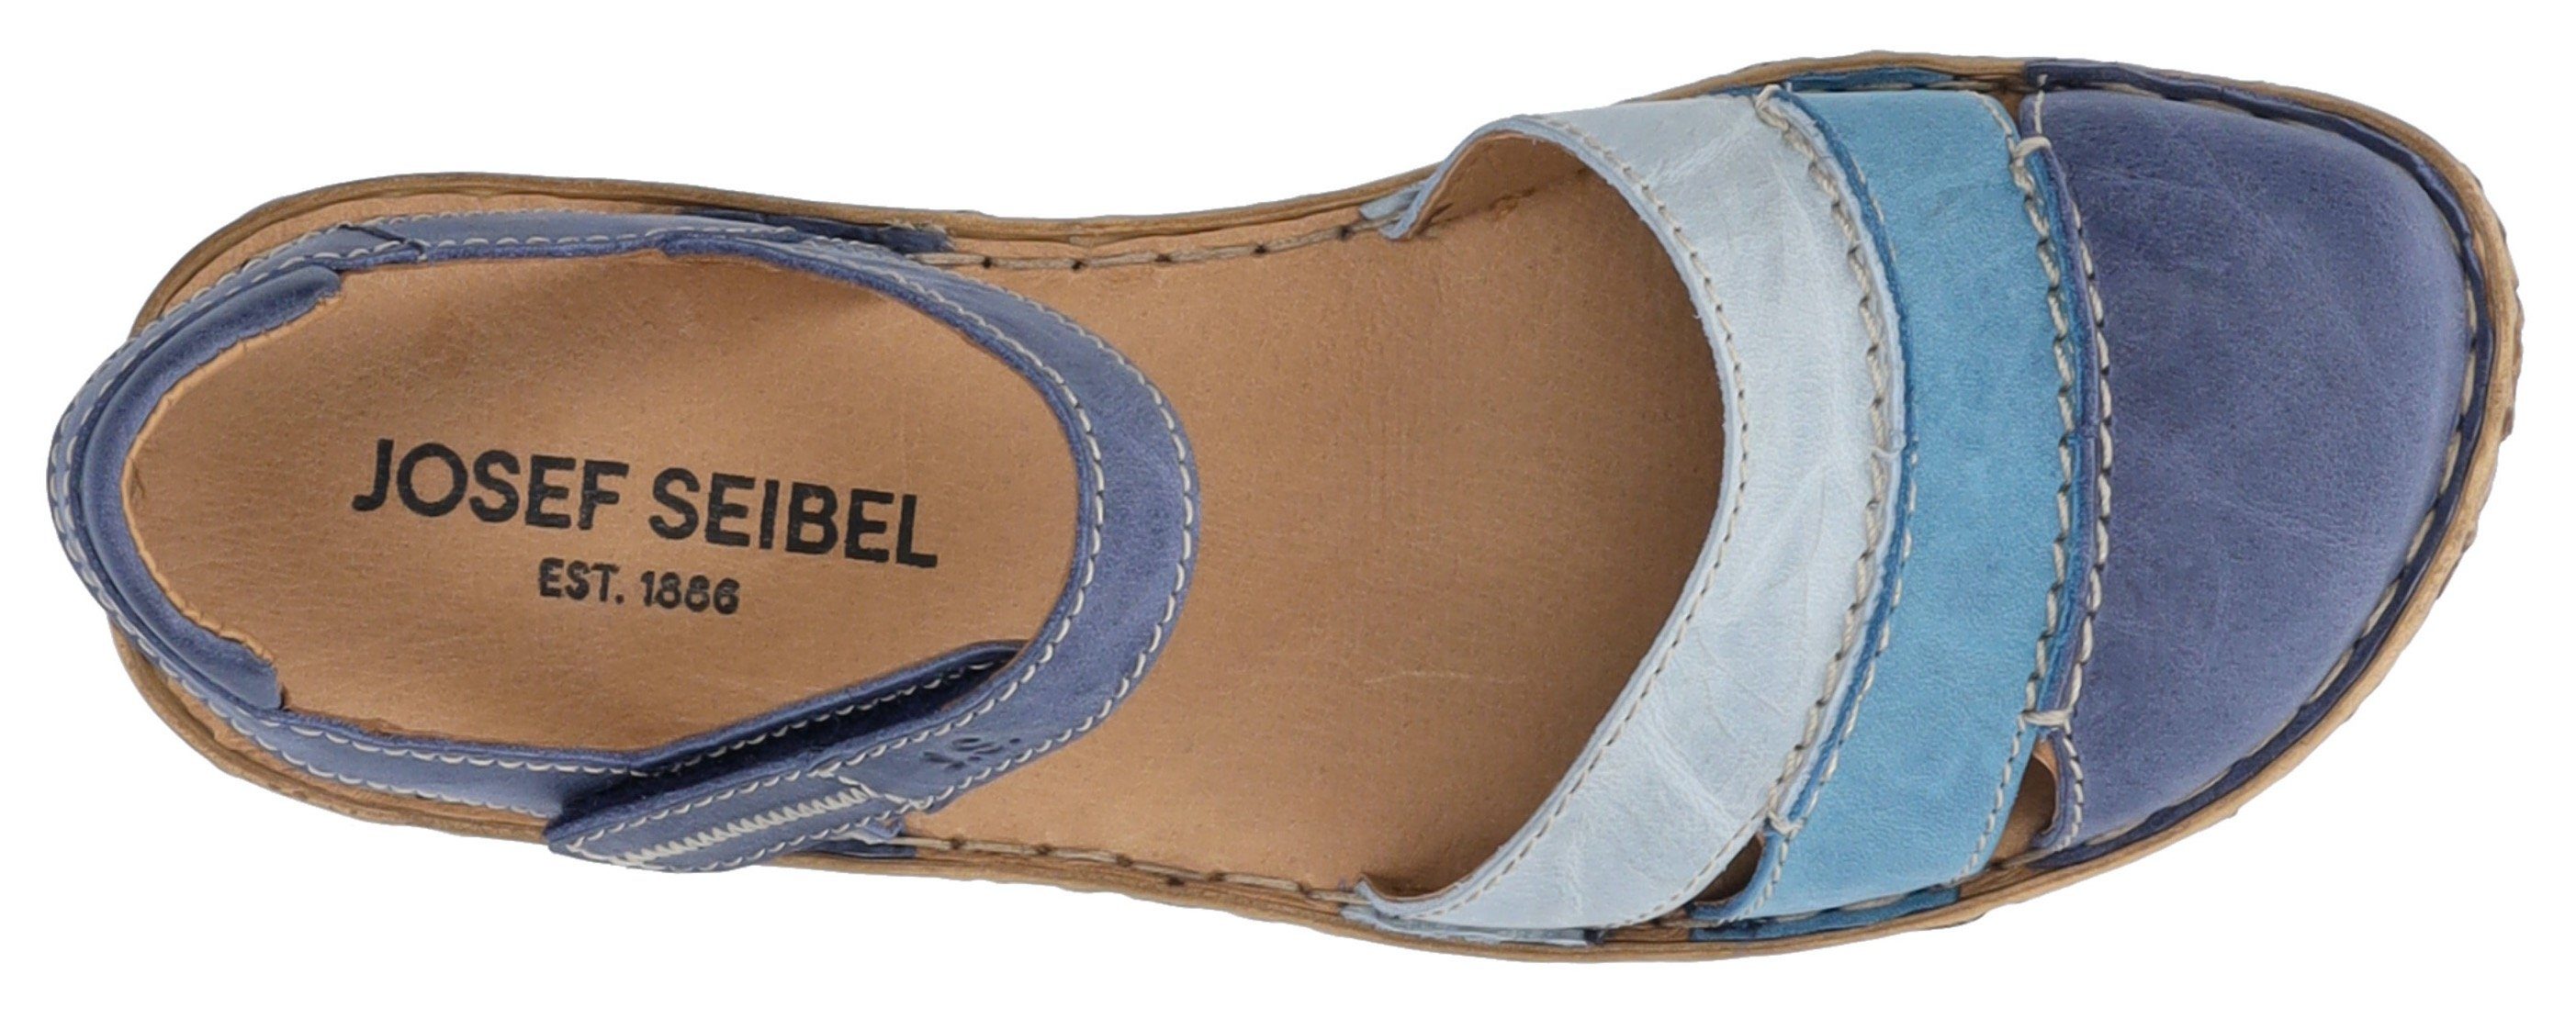 44 Seibel Josef Innensohle ROSALIE weich gepolsterter Sandale blau-kombiniert mit